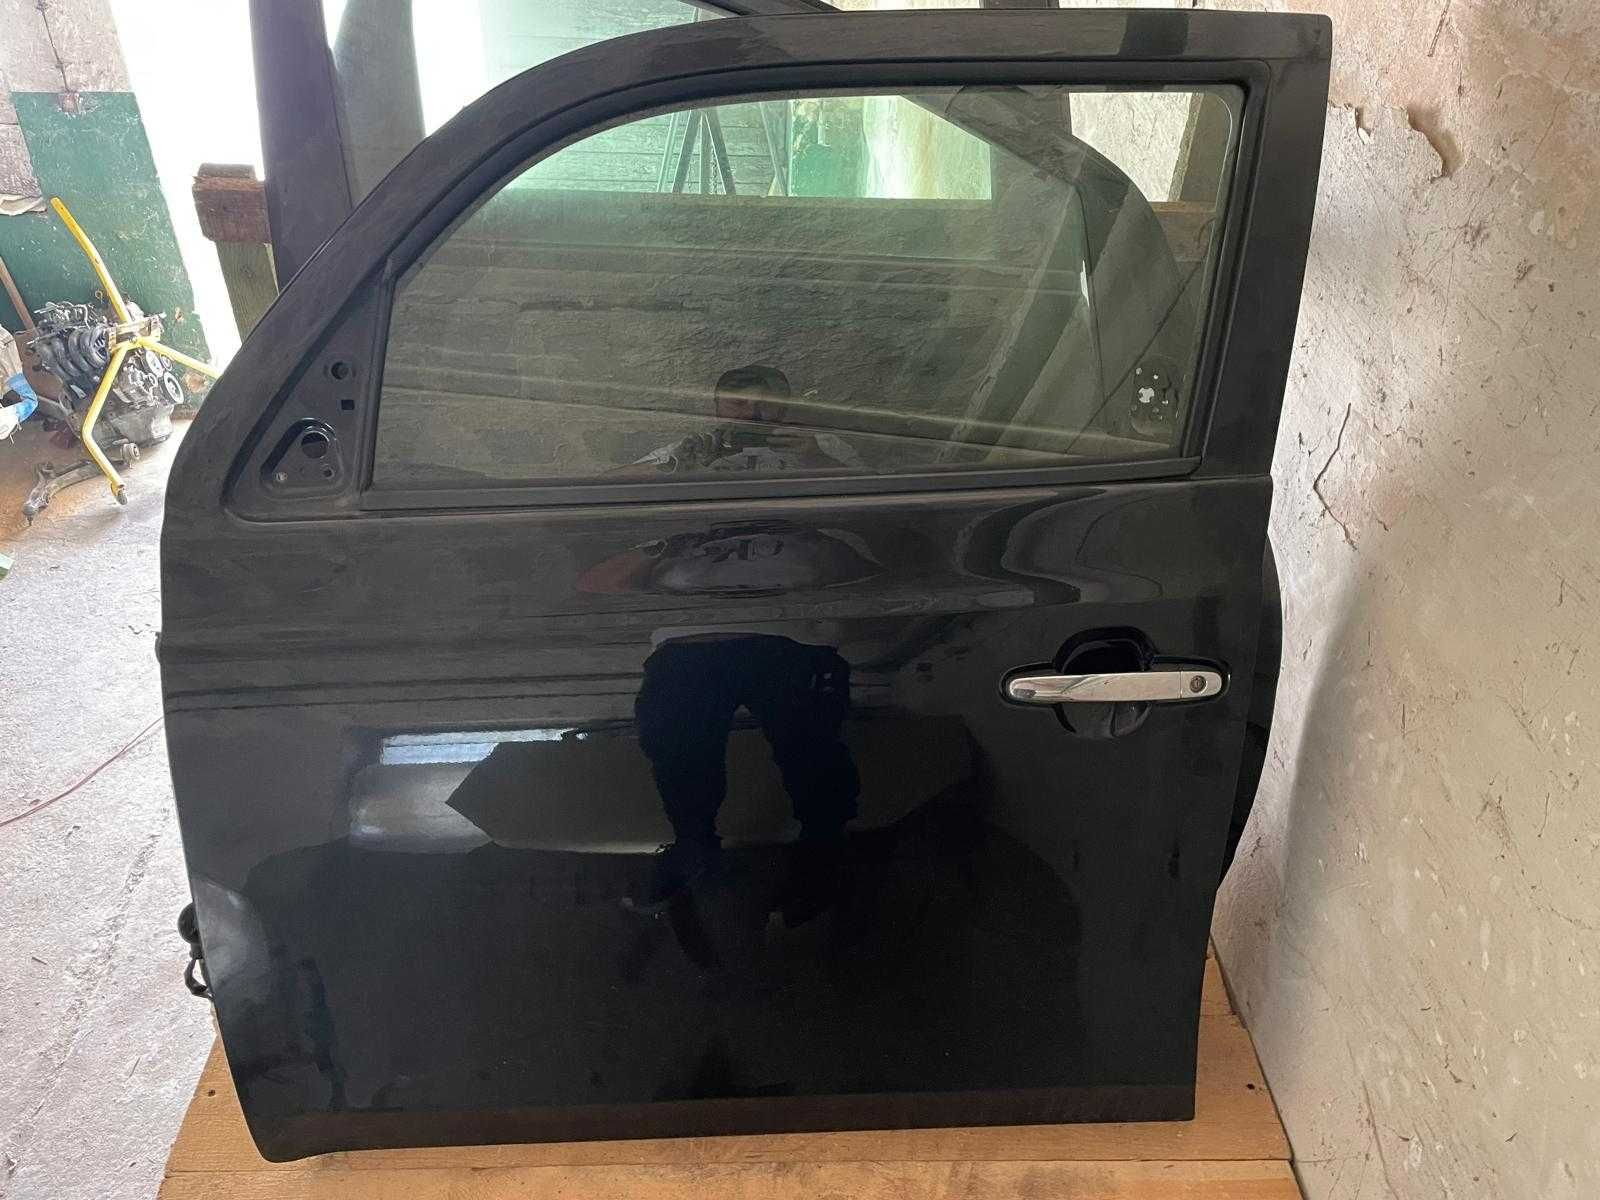 Daihatsu Materia - Drzwi lewe Przednie - Do założenia Czarne Kompletne